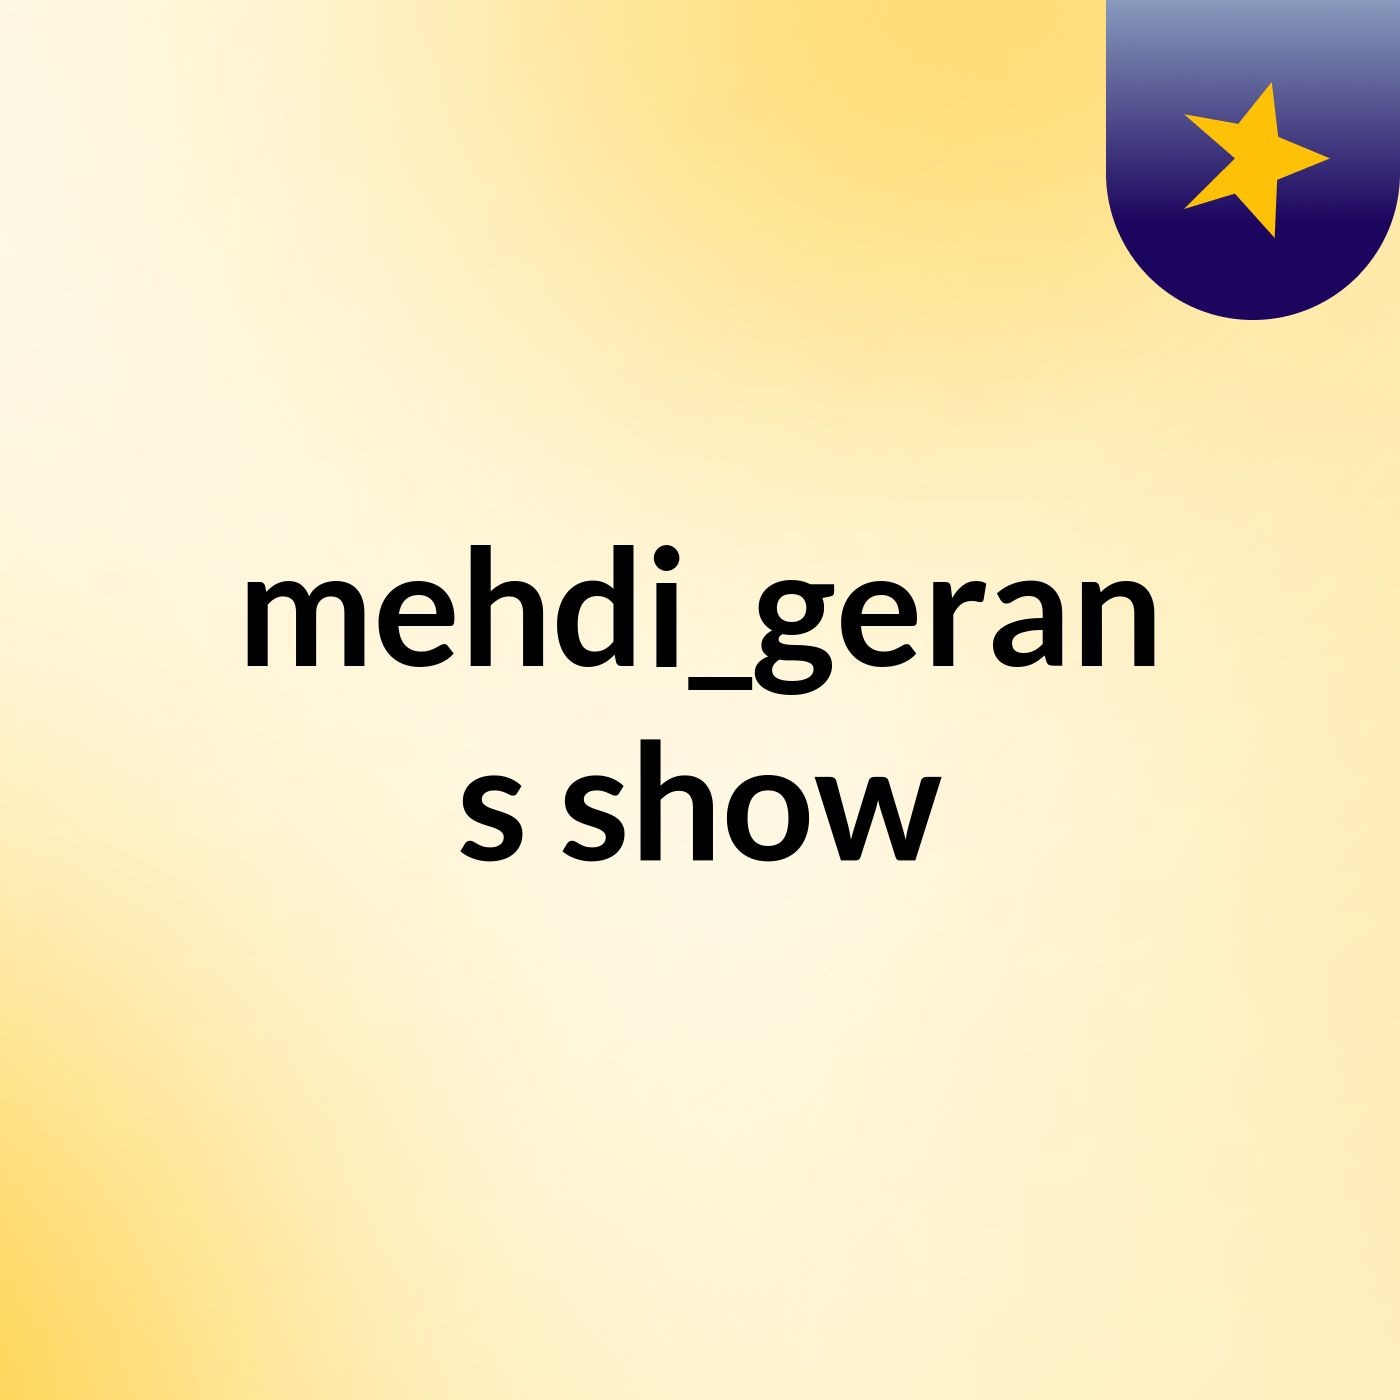 mehdi_geran's show